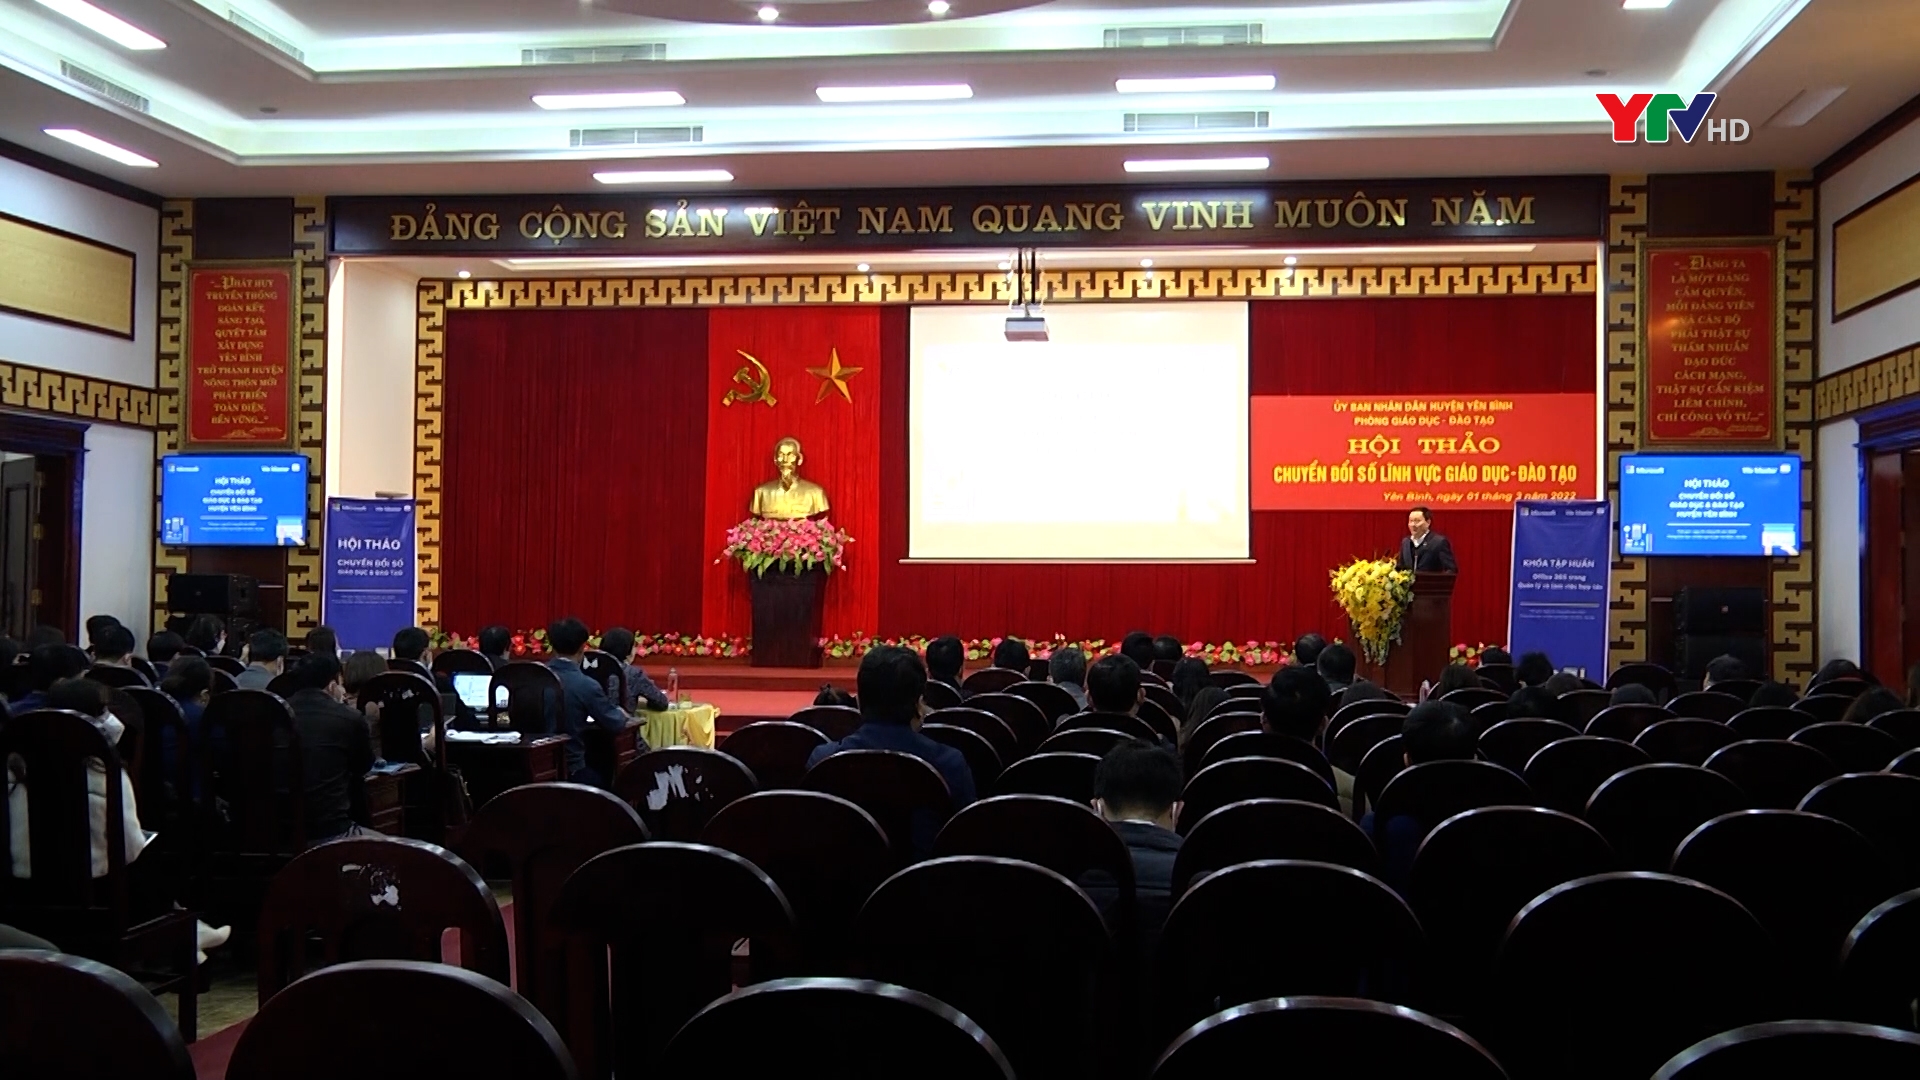 Huyện Yên Bình tổ chức Hội thảo chuyển đổi số trong lĩnh vực giáo dục